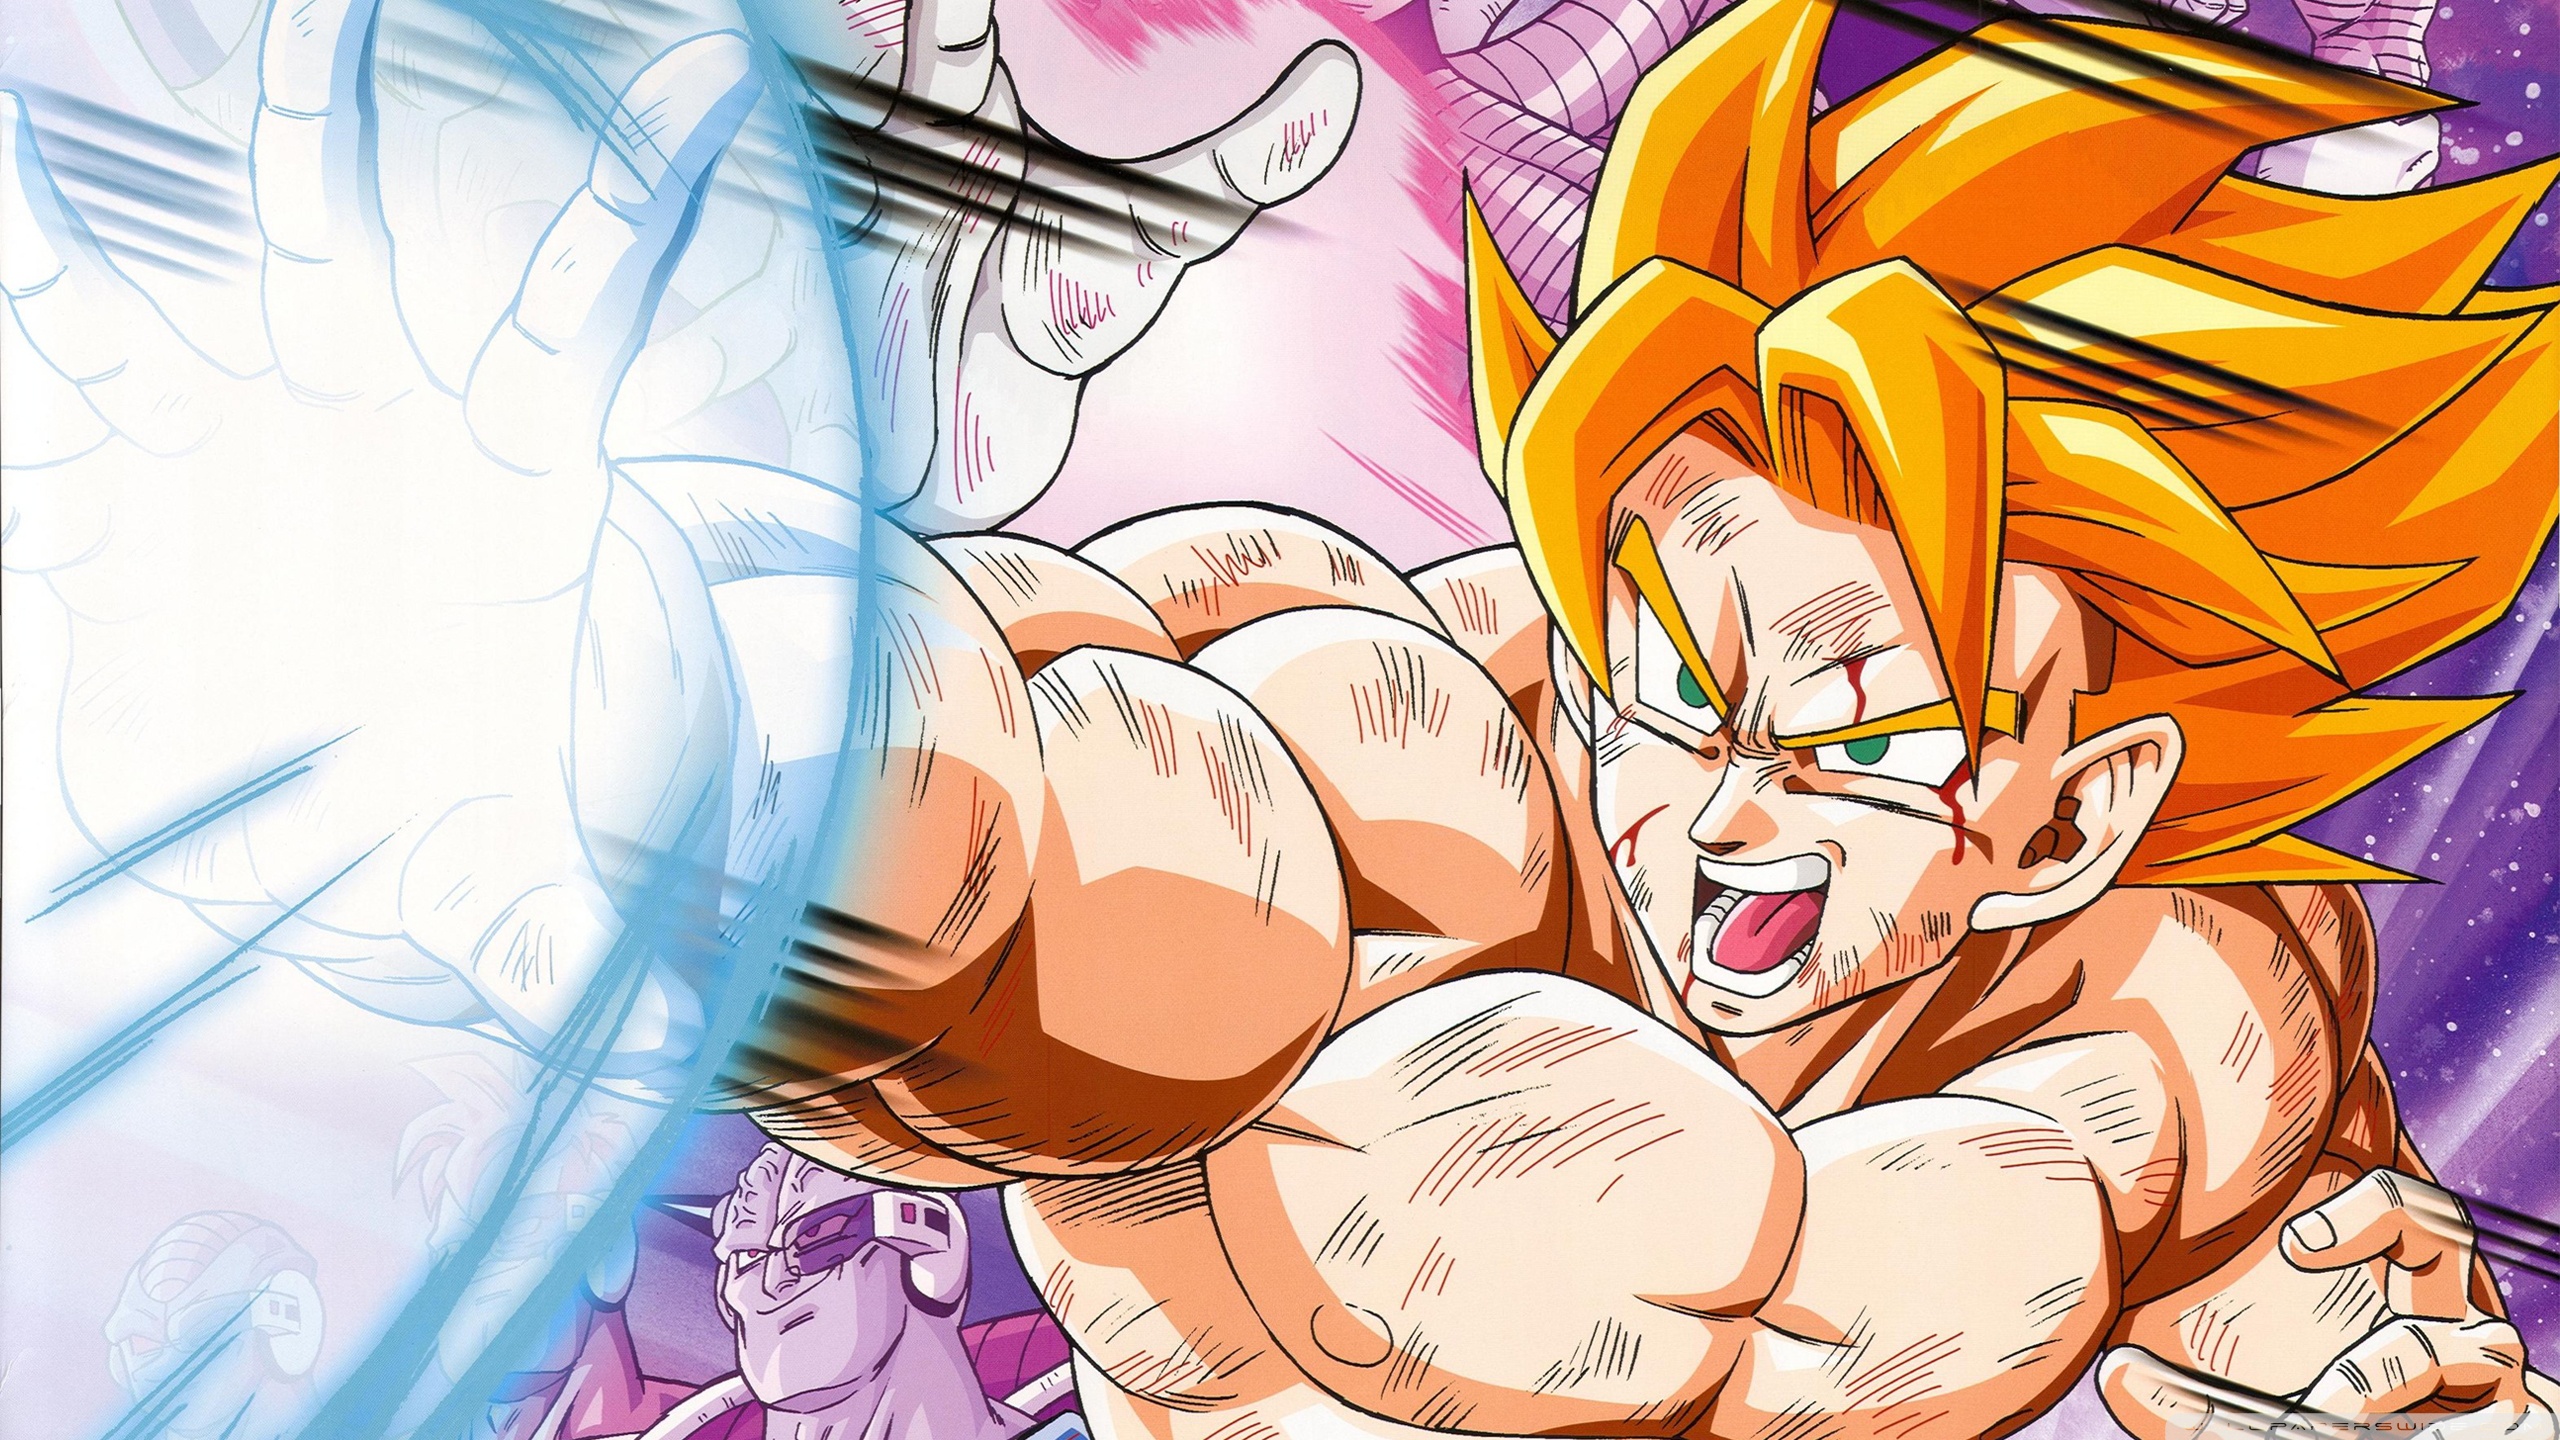 100+] Dragon Ball Z Goku Wallpapers